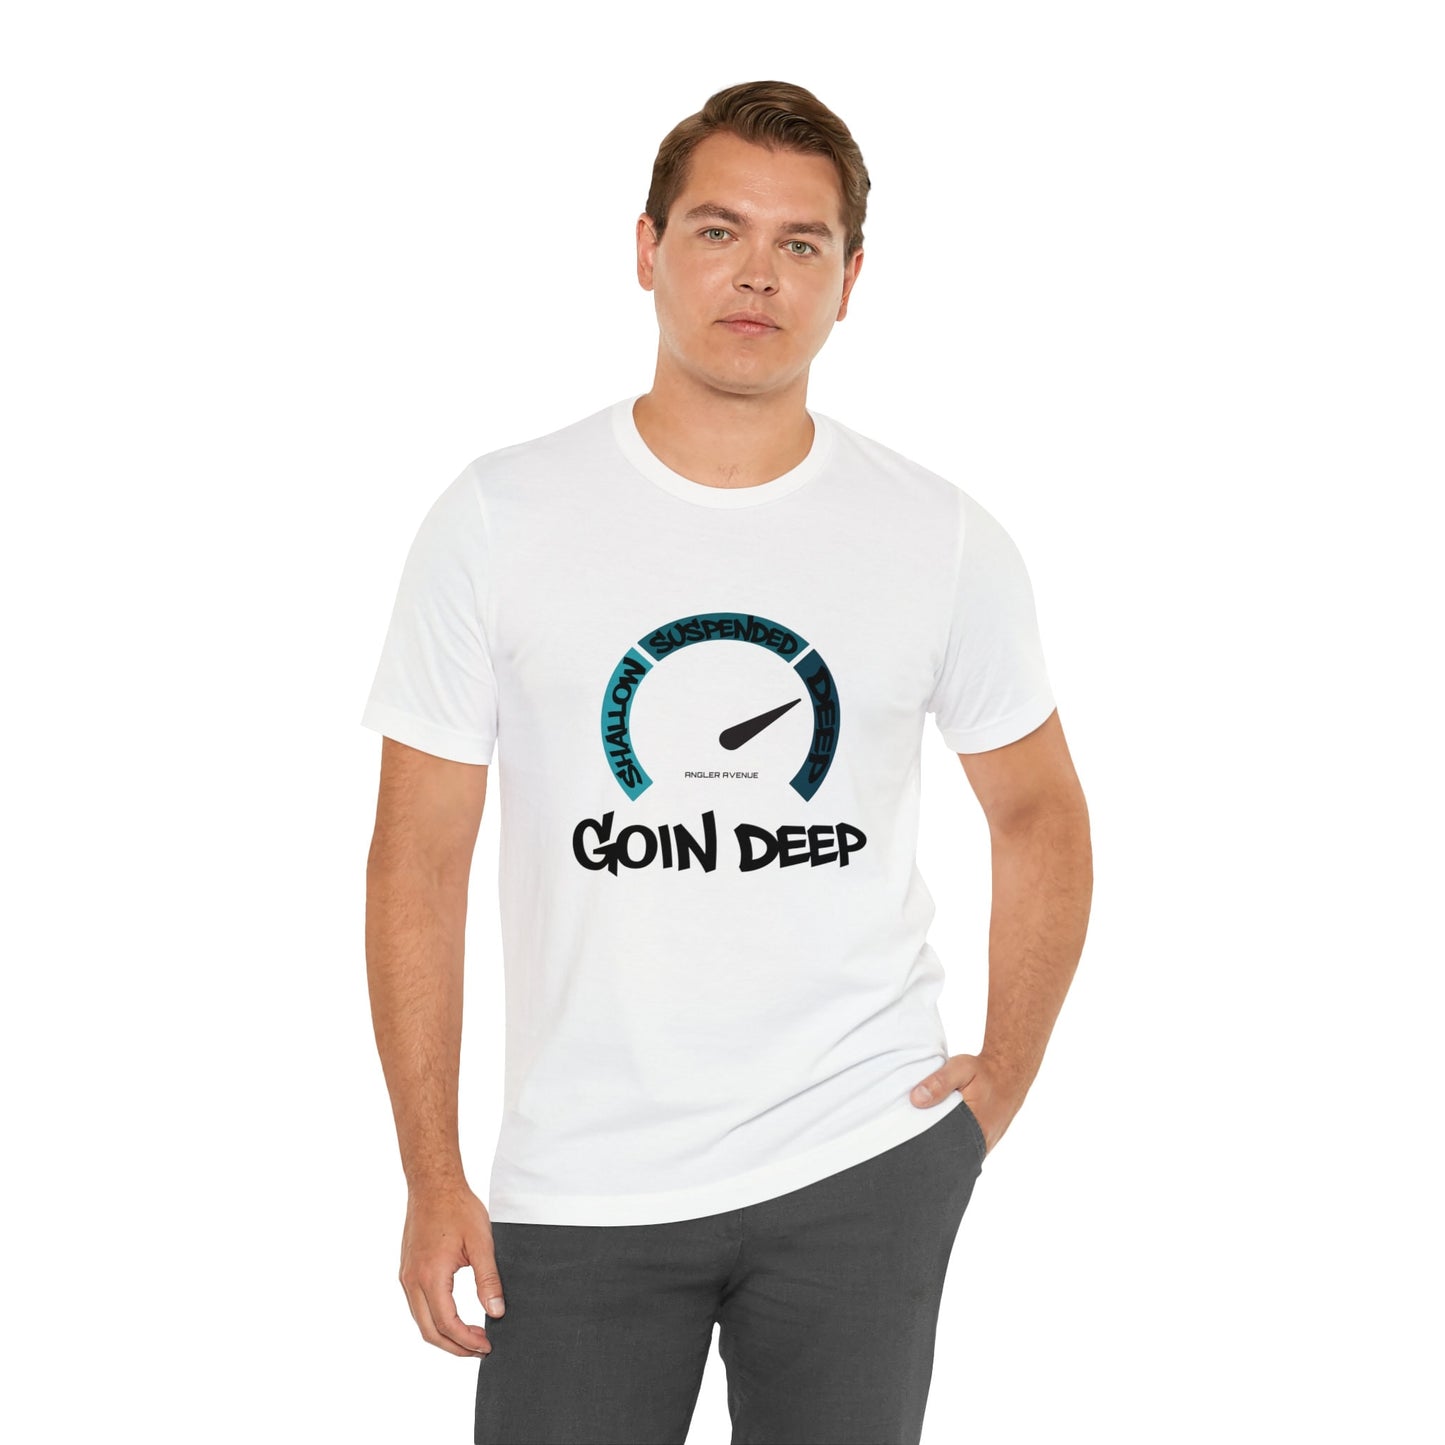 Goin Deep T-Shirt